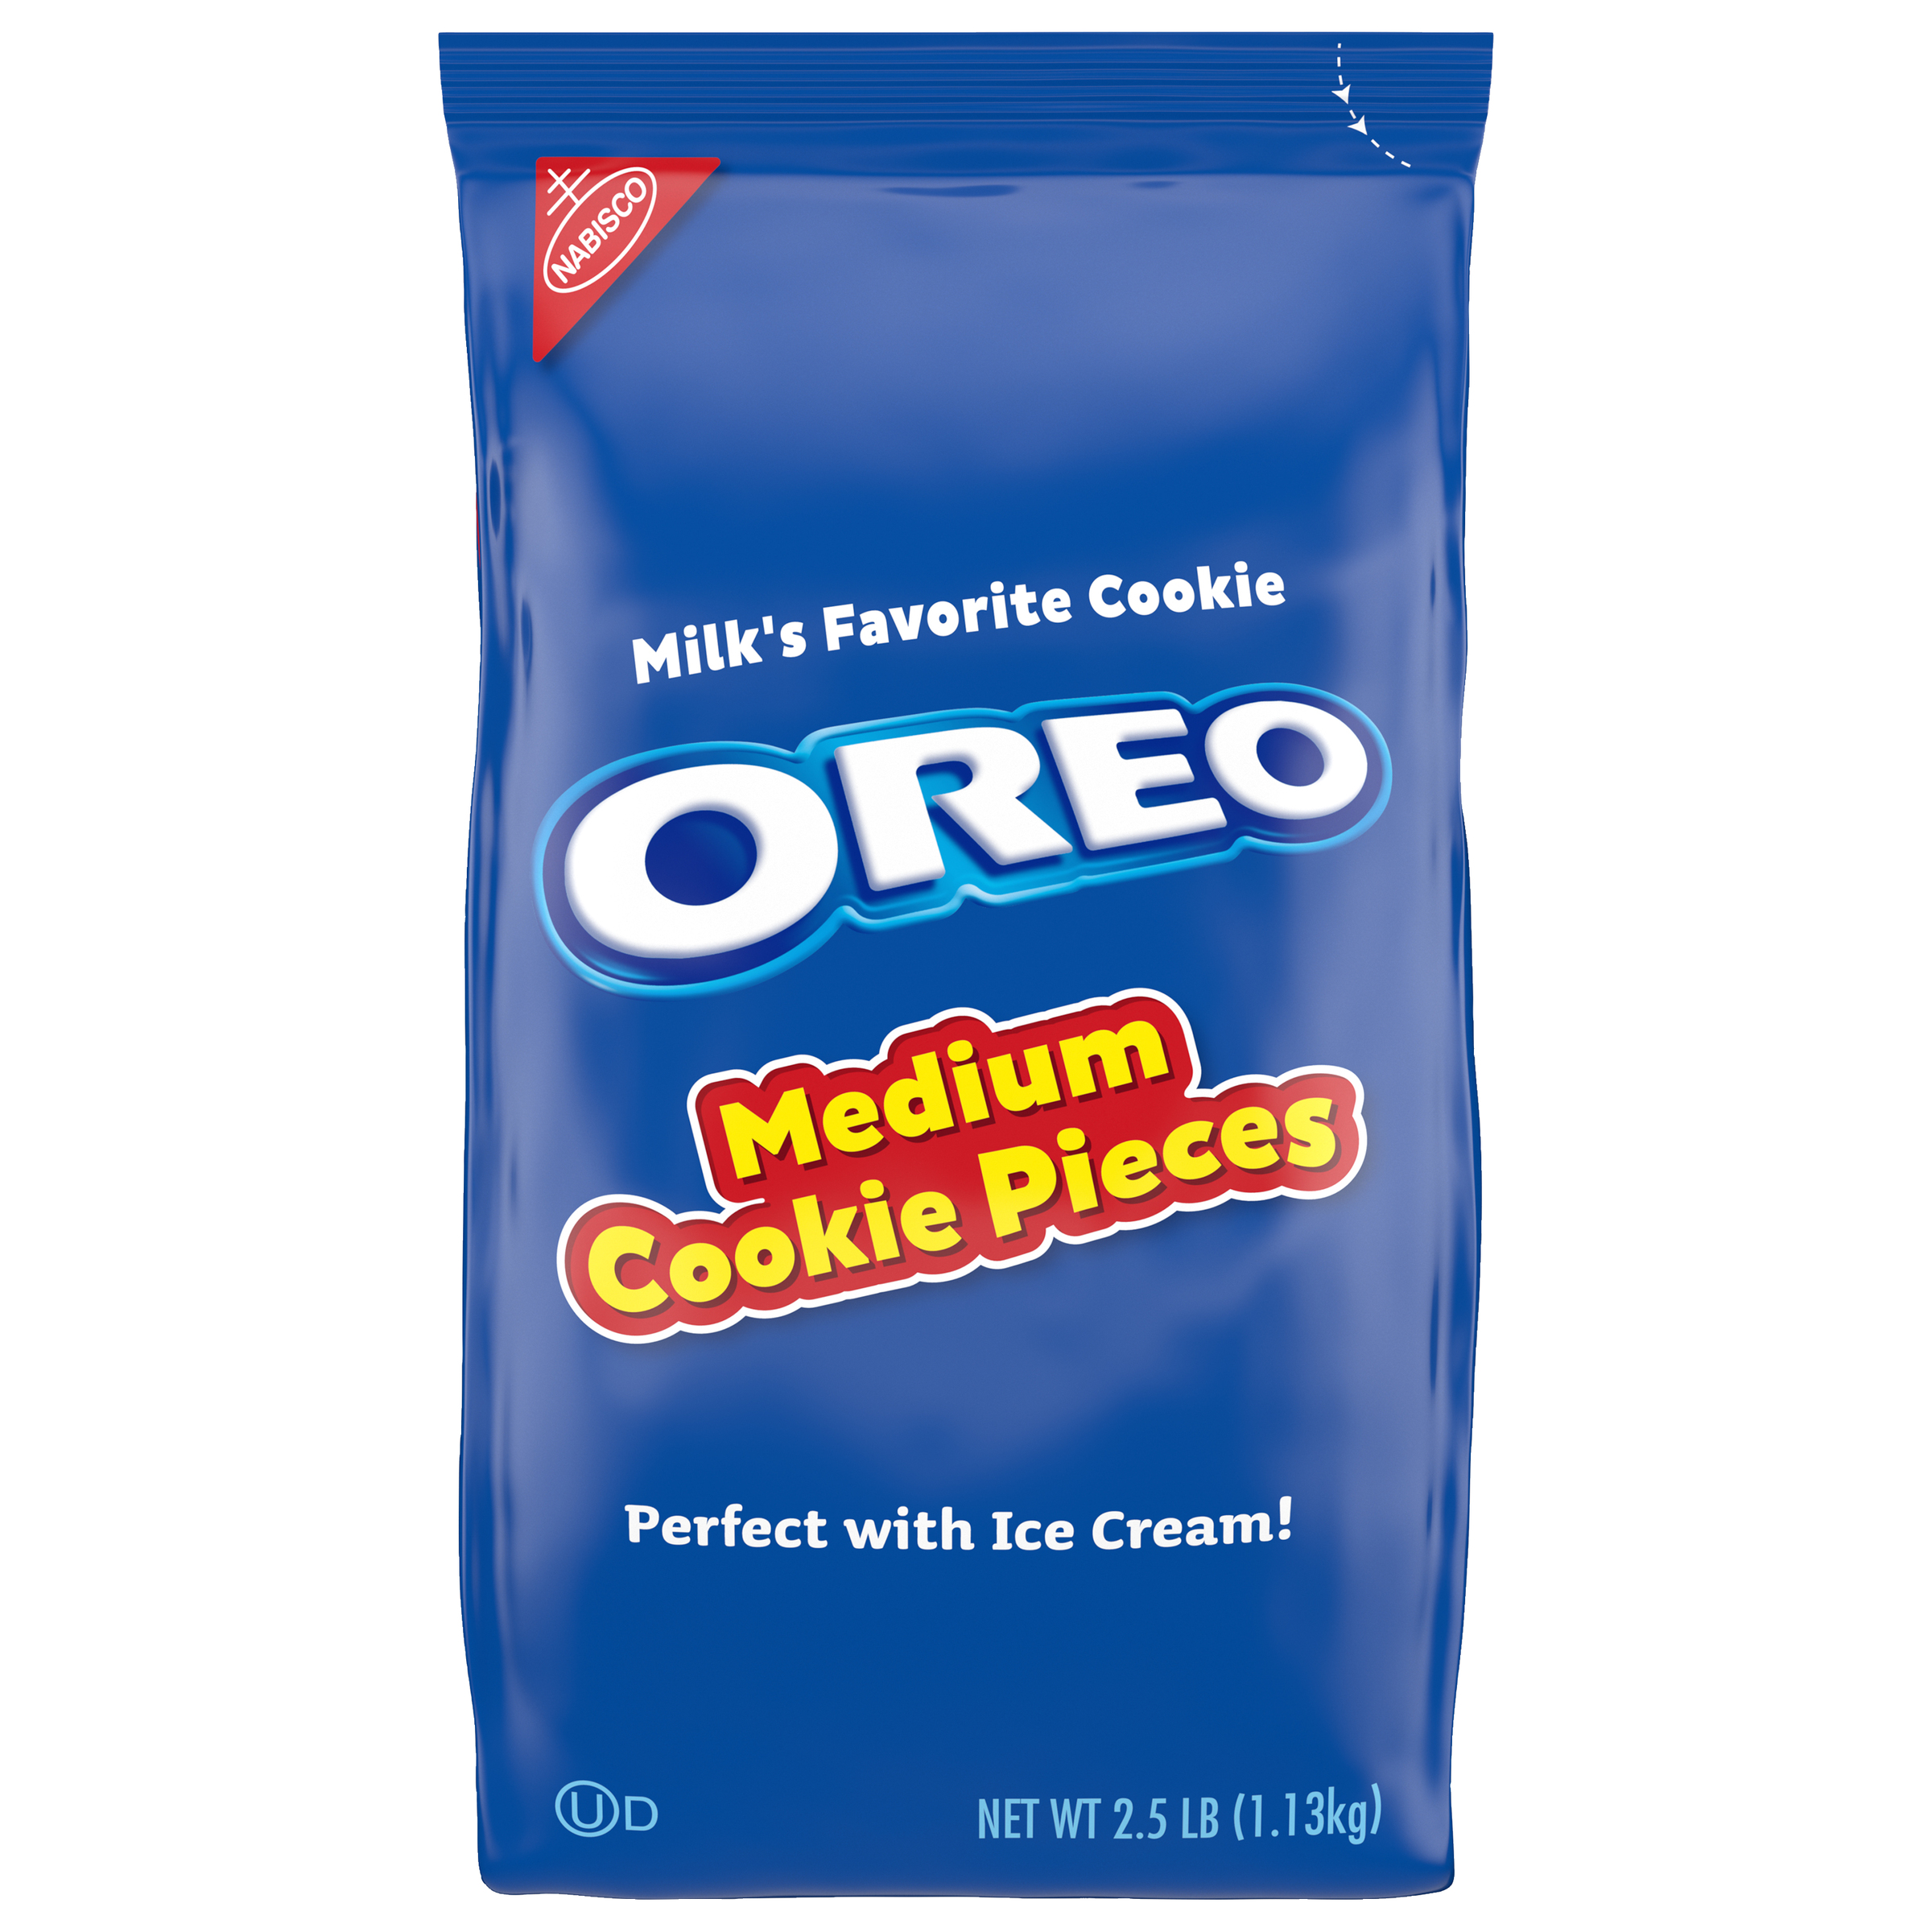 OREO Medium Cookie Pieces 4/2.5LB